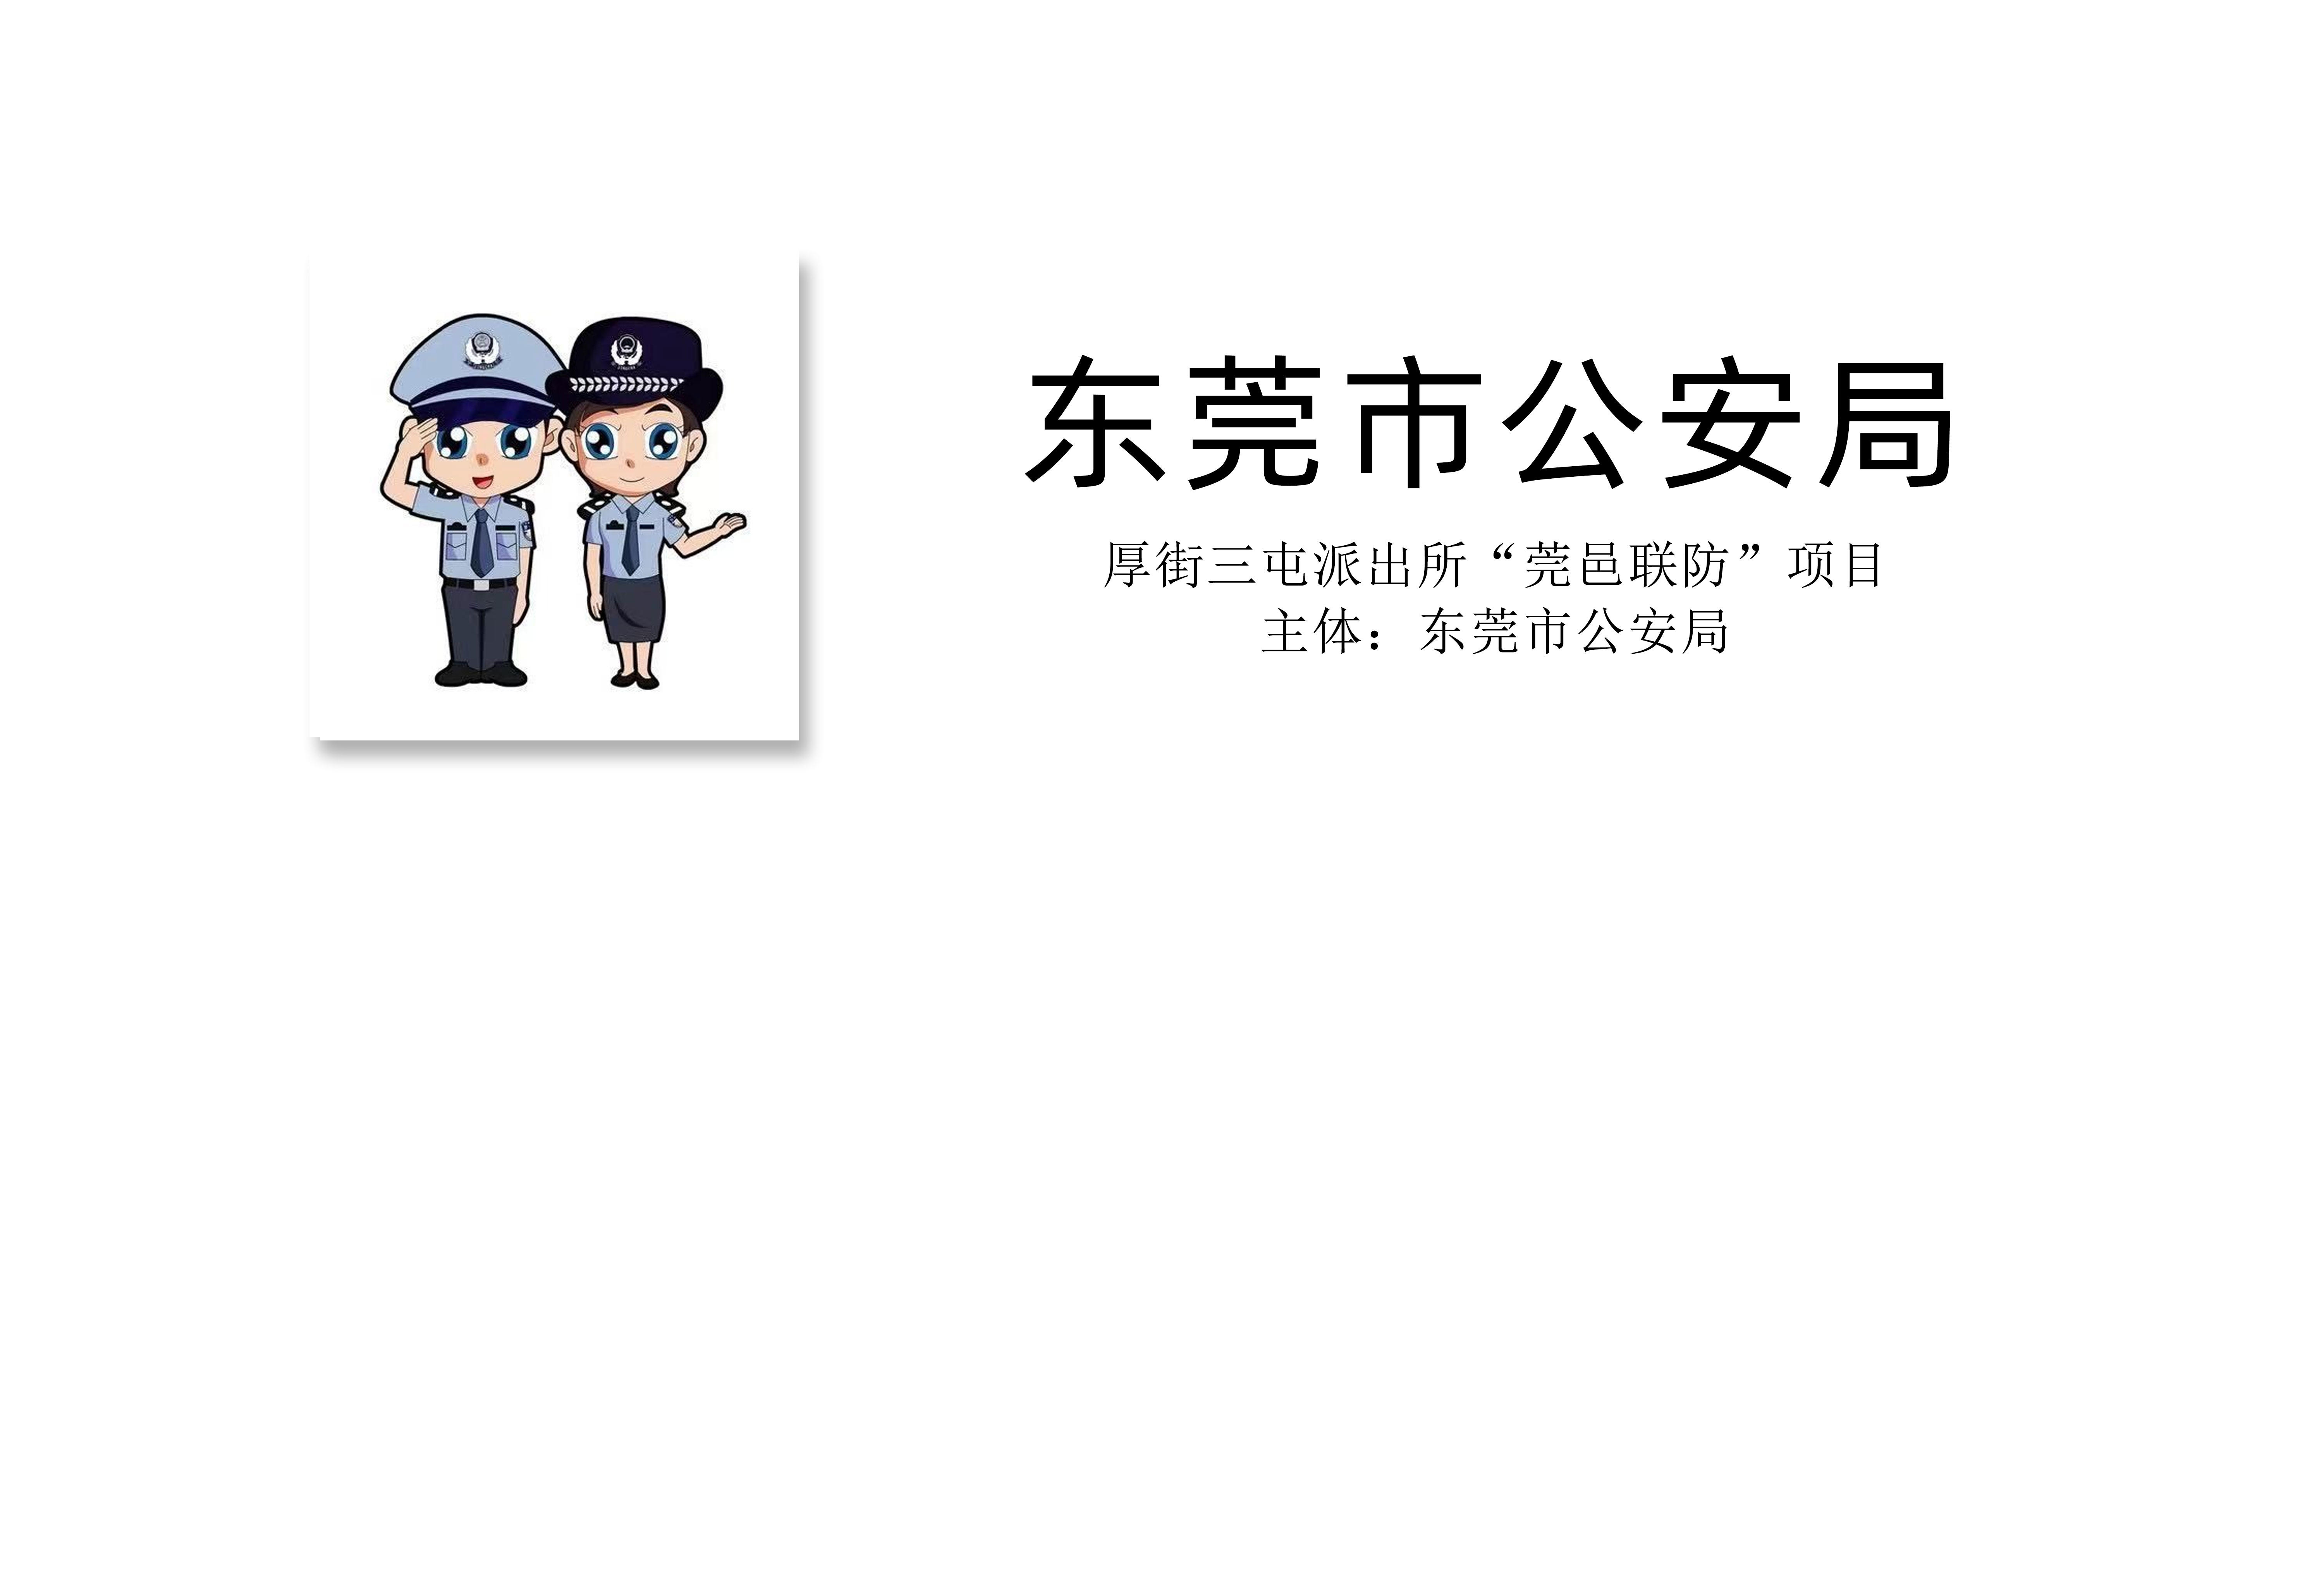 政务板块：“东莞市公安局”